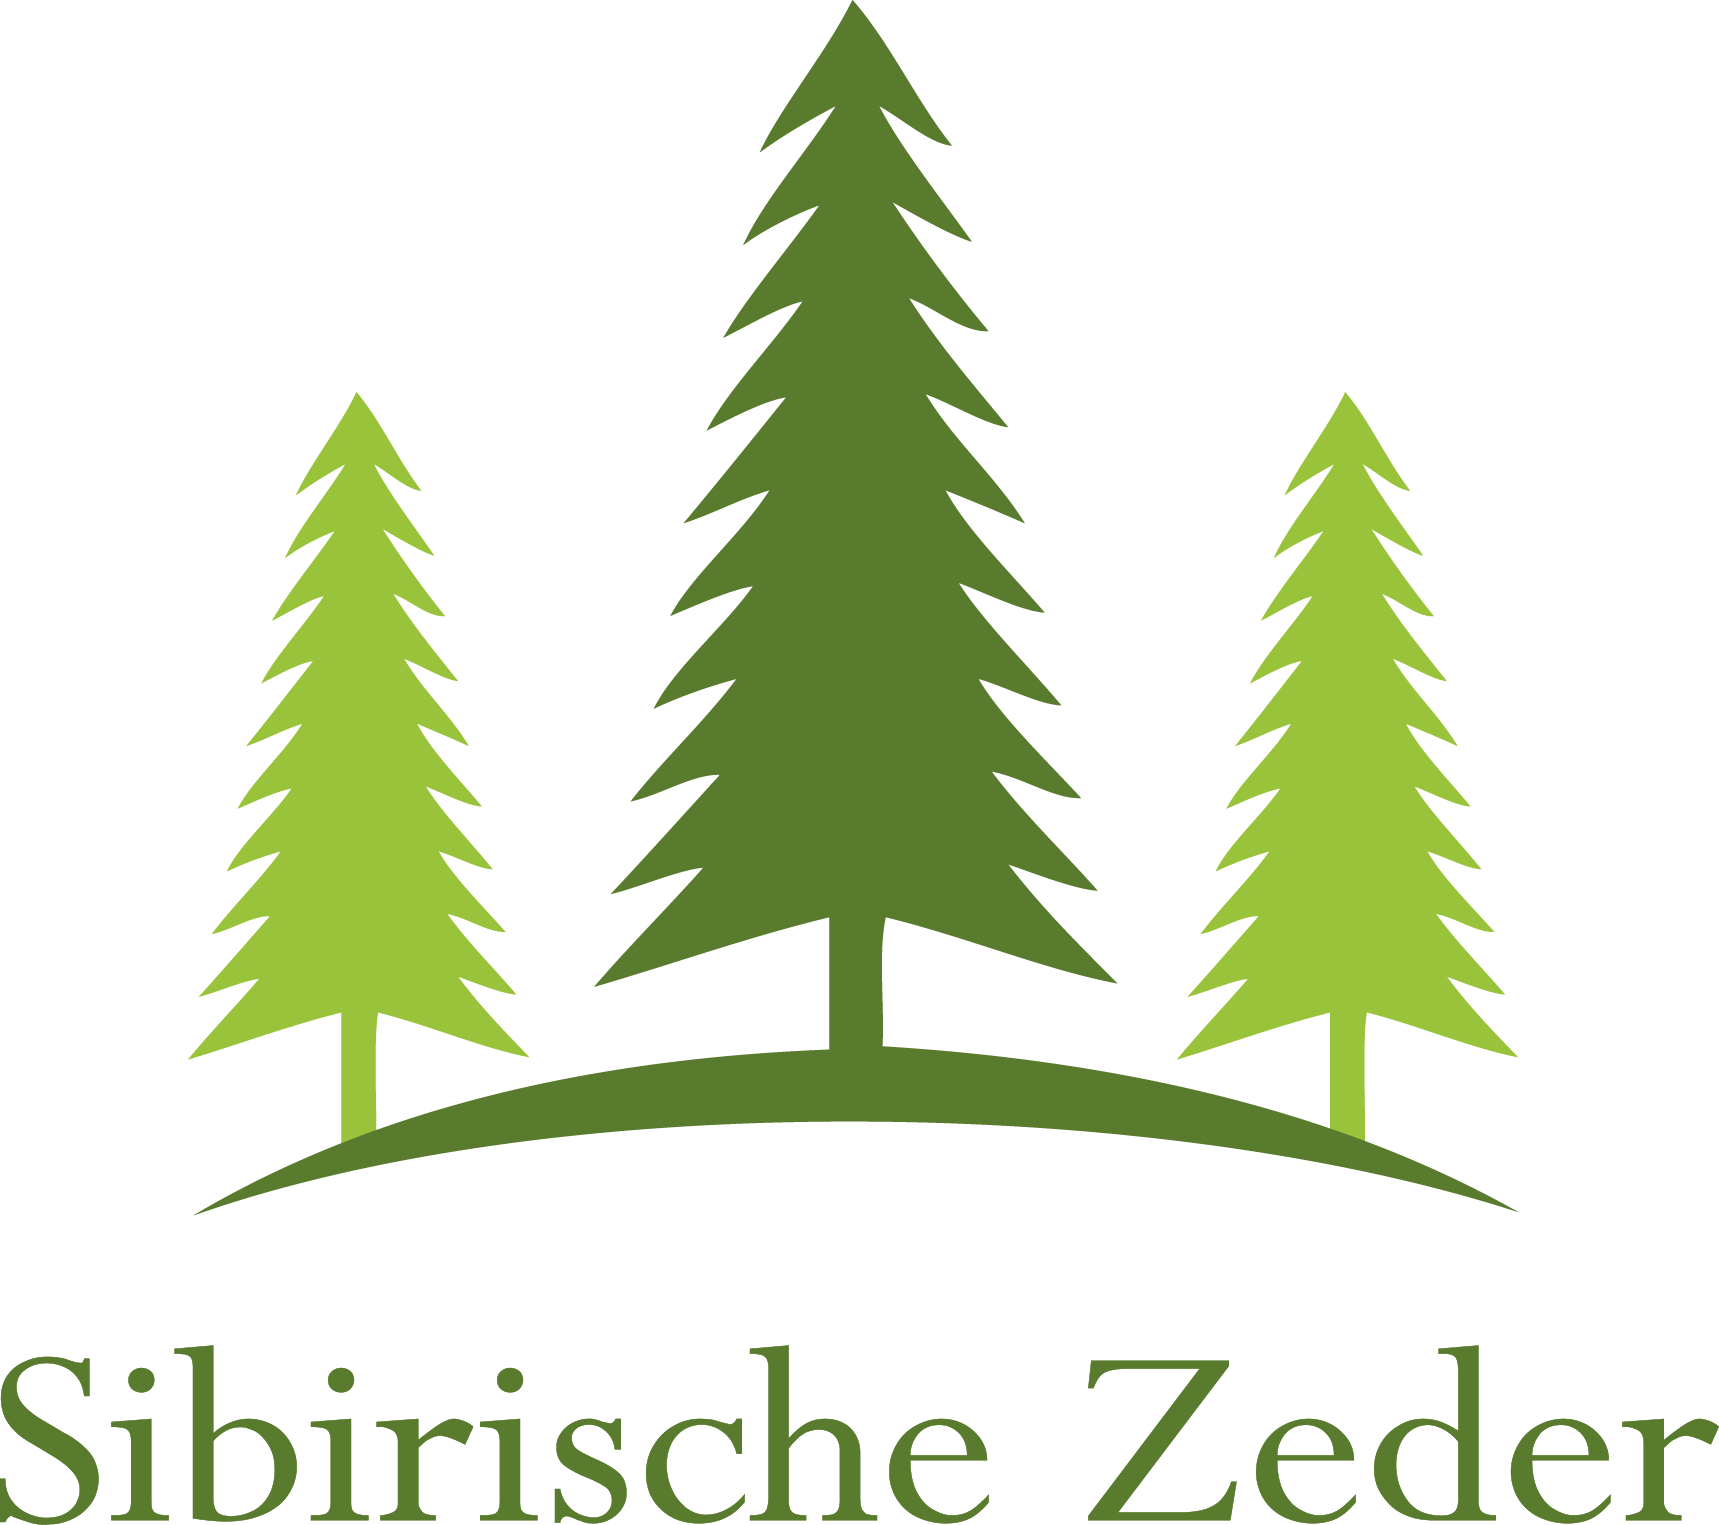 www.sibirische-zeder.de